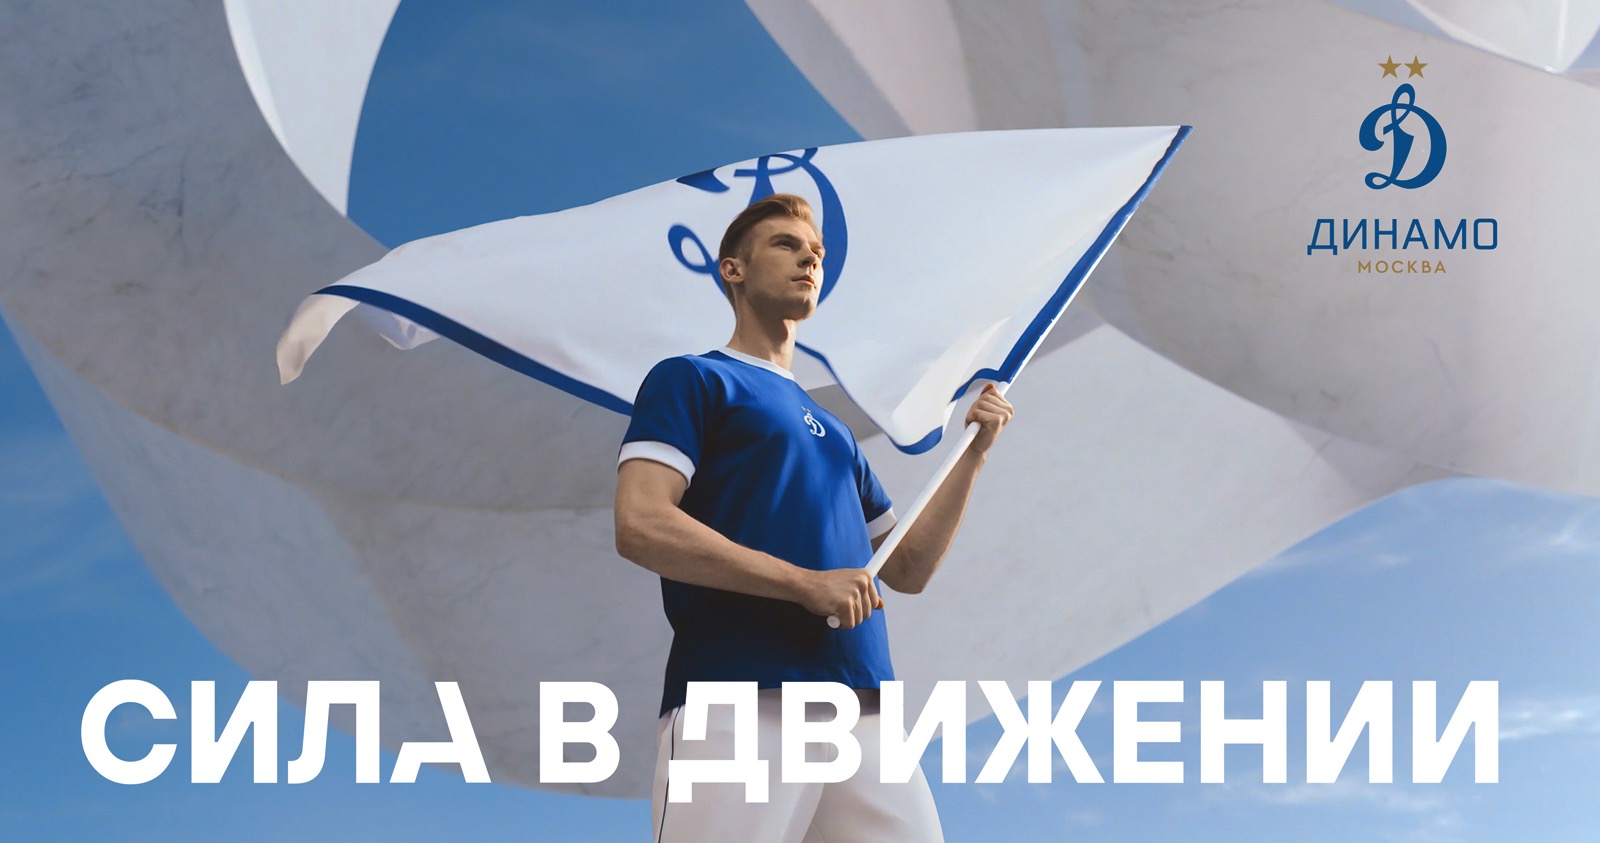 Сила в движении: футбольный клуб «Динамо» представляет новую коммуникационную кампанию